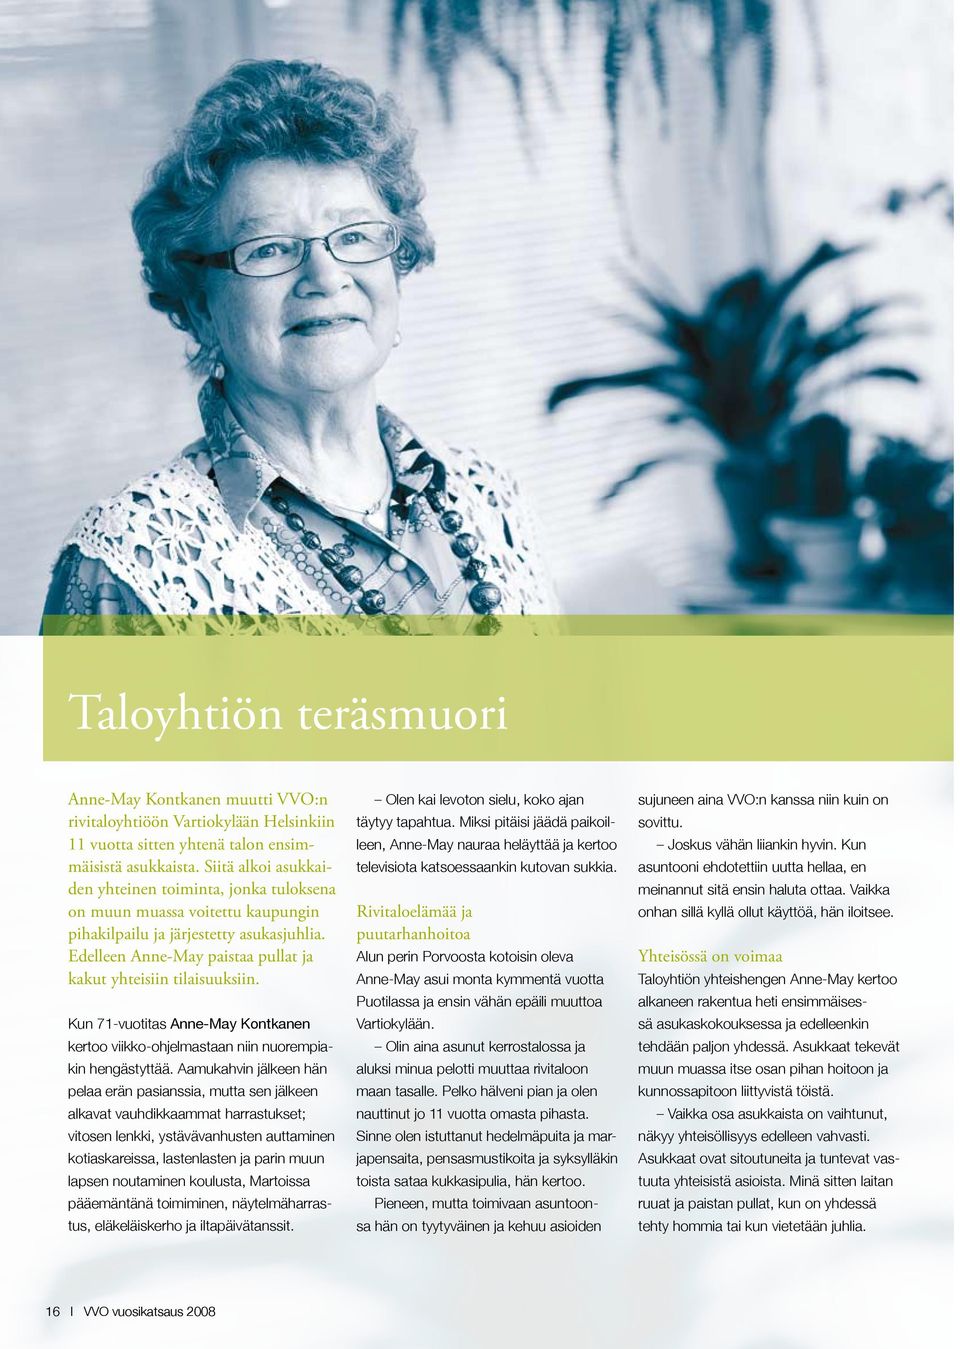 Kun 71-vuotitas Anne-May Kontkanen kertoo viikko-ohjelmastaan niin nuorempiakin hengästyttää.